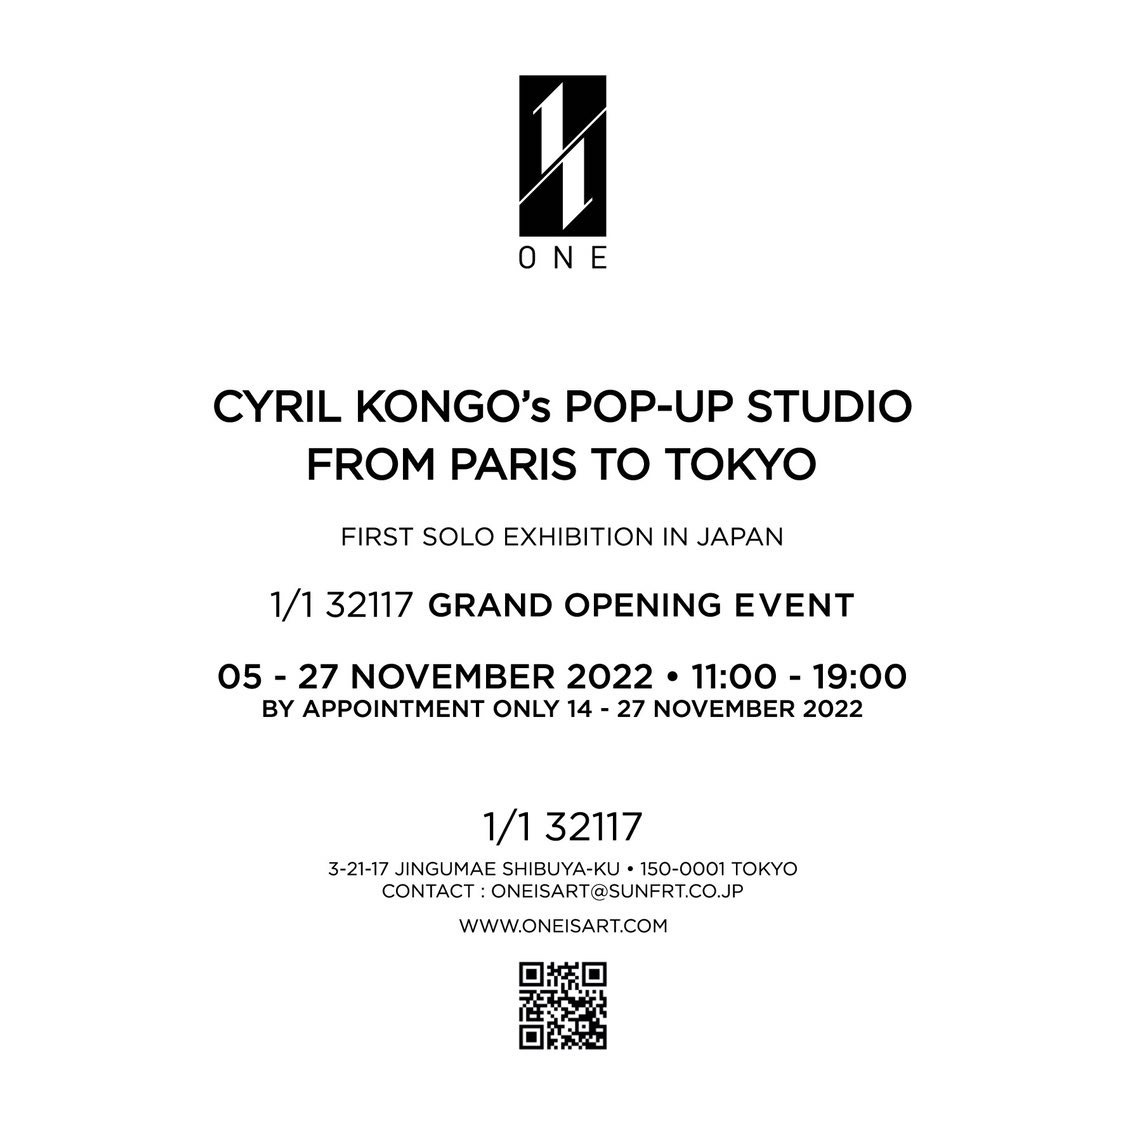 フランスを拠点に活動するアーティスト、シリル・コンゴによる日本初個展『CYRIL KONGO’s POP-UP STUDIO 